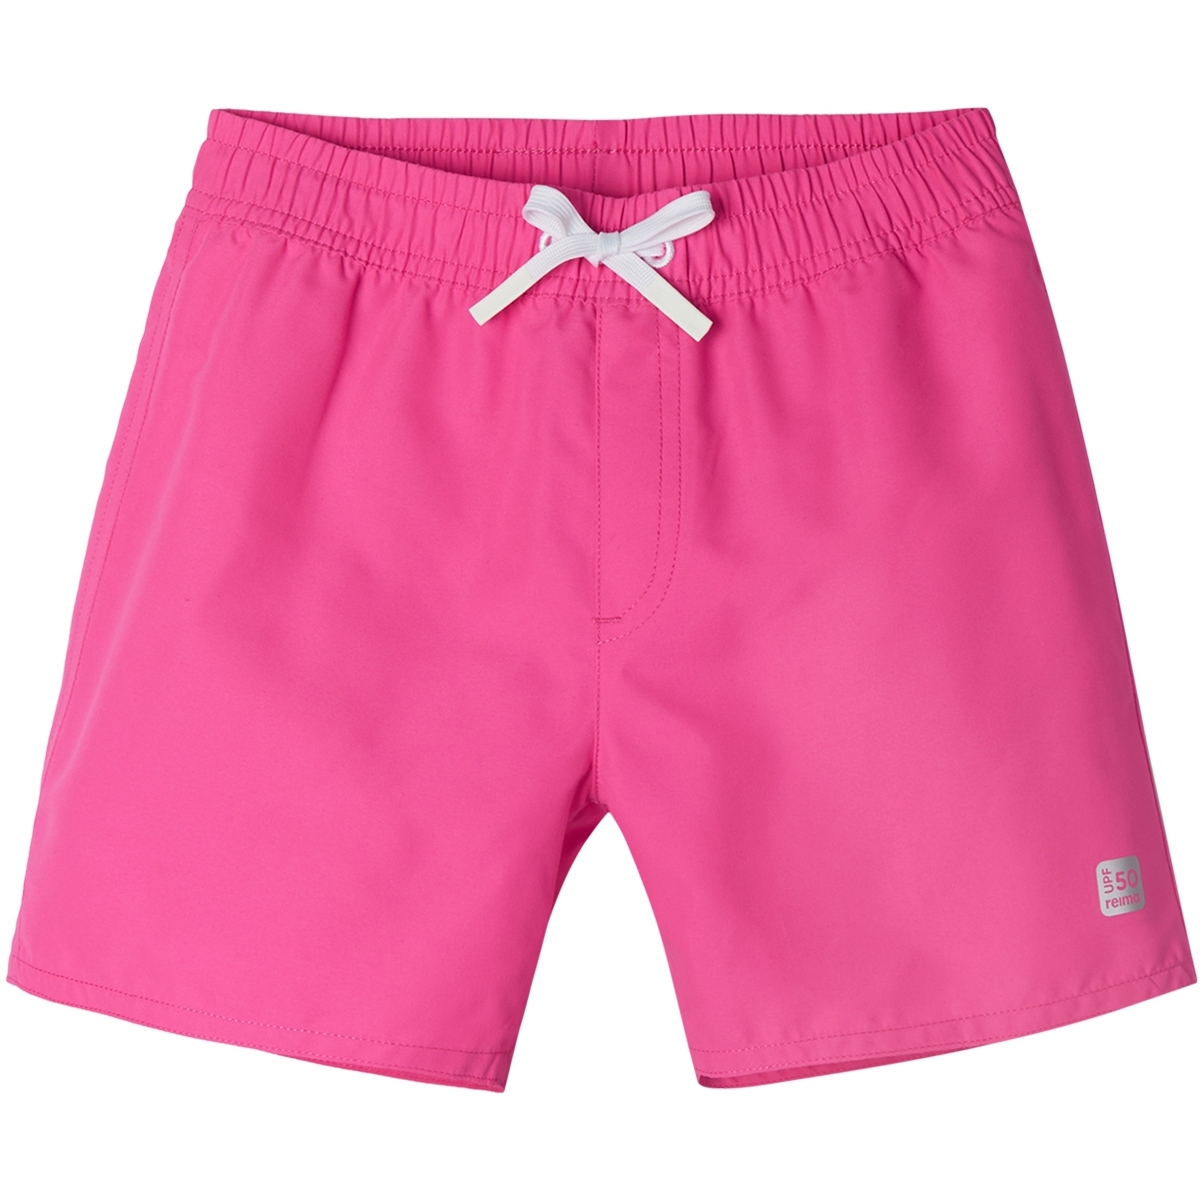 Produktbild von Reima Somero Schwimm-Shorts Kinder - fuchsia pink 4600